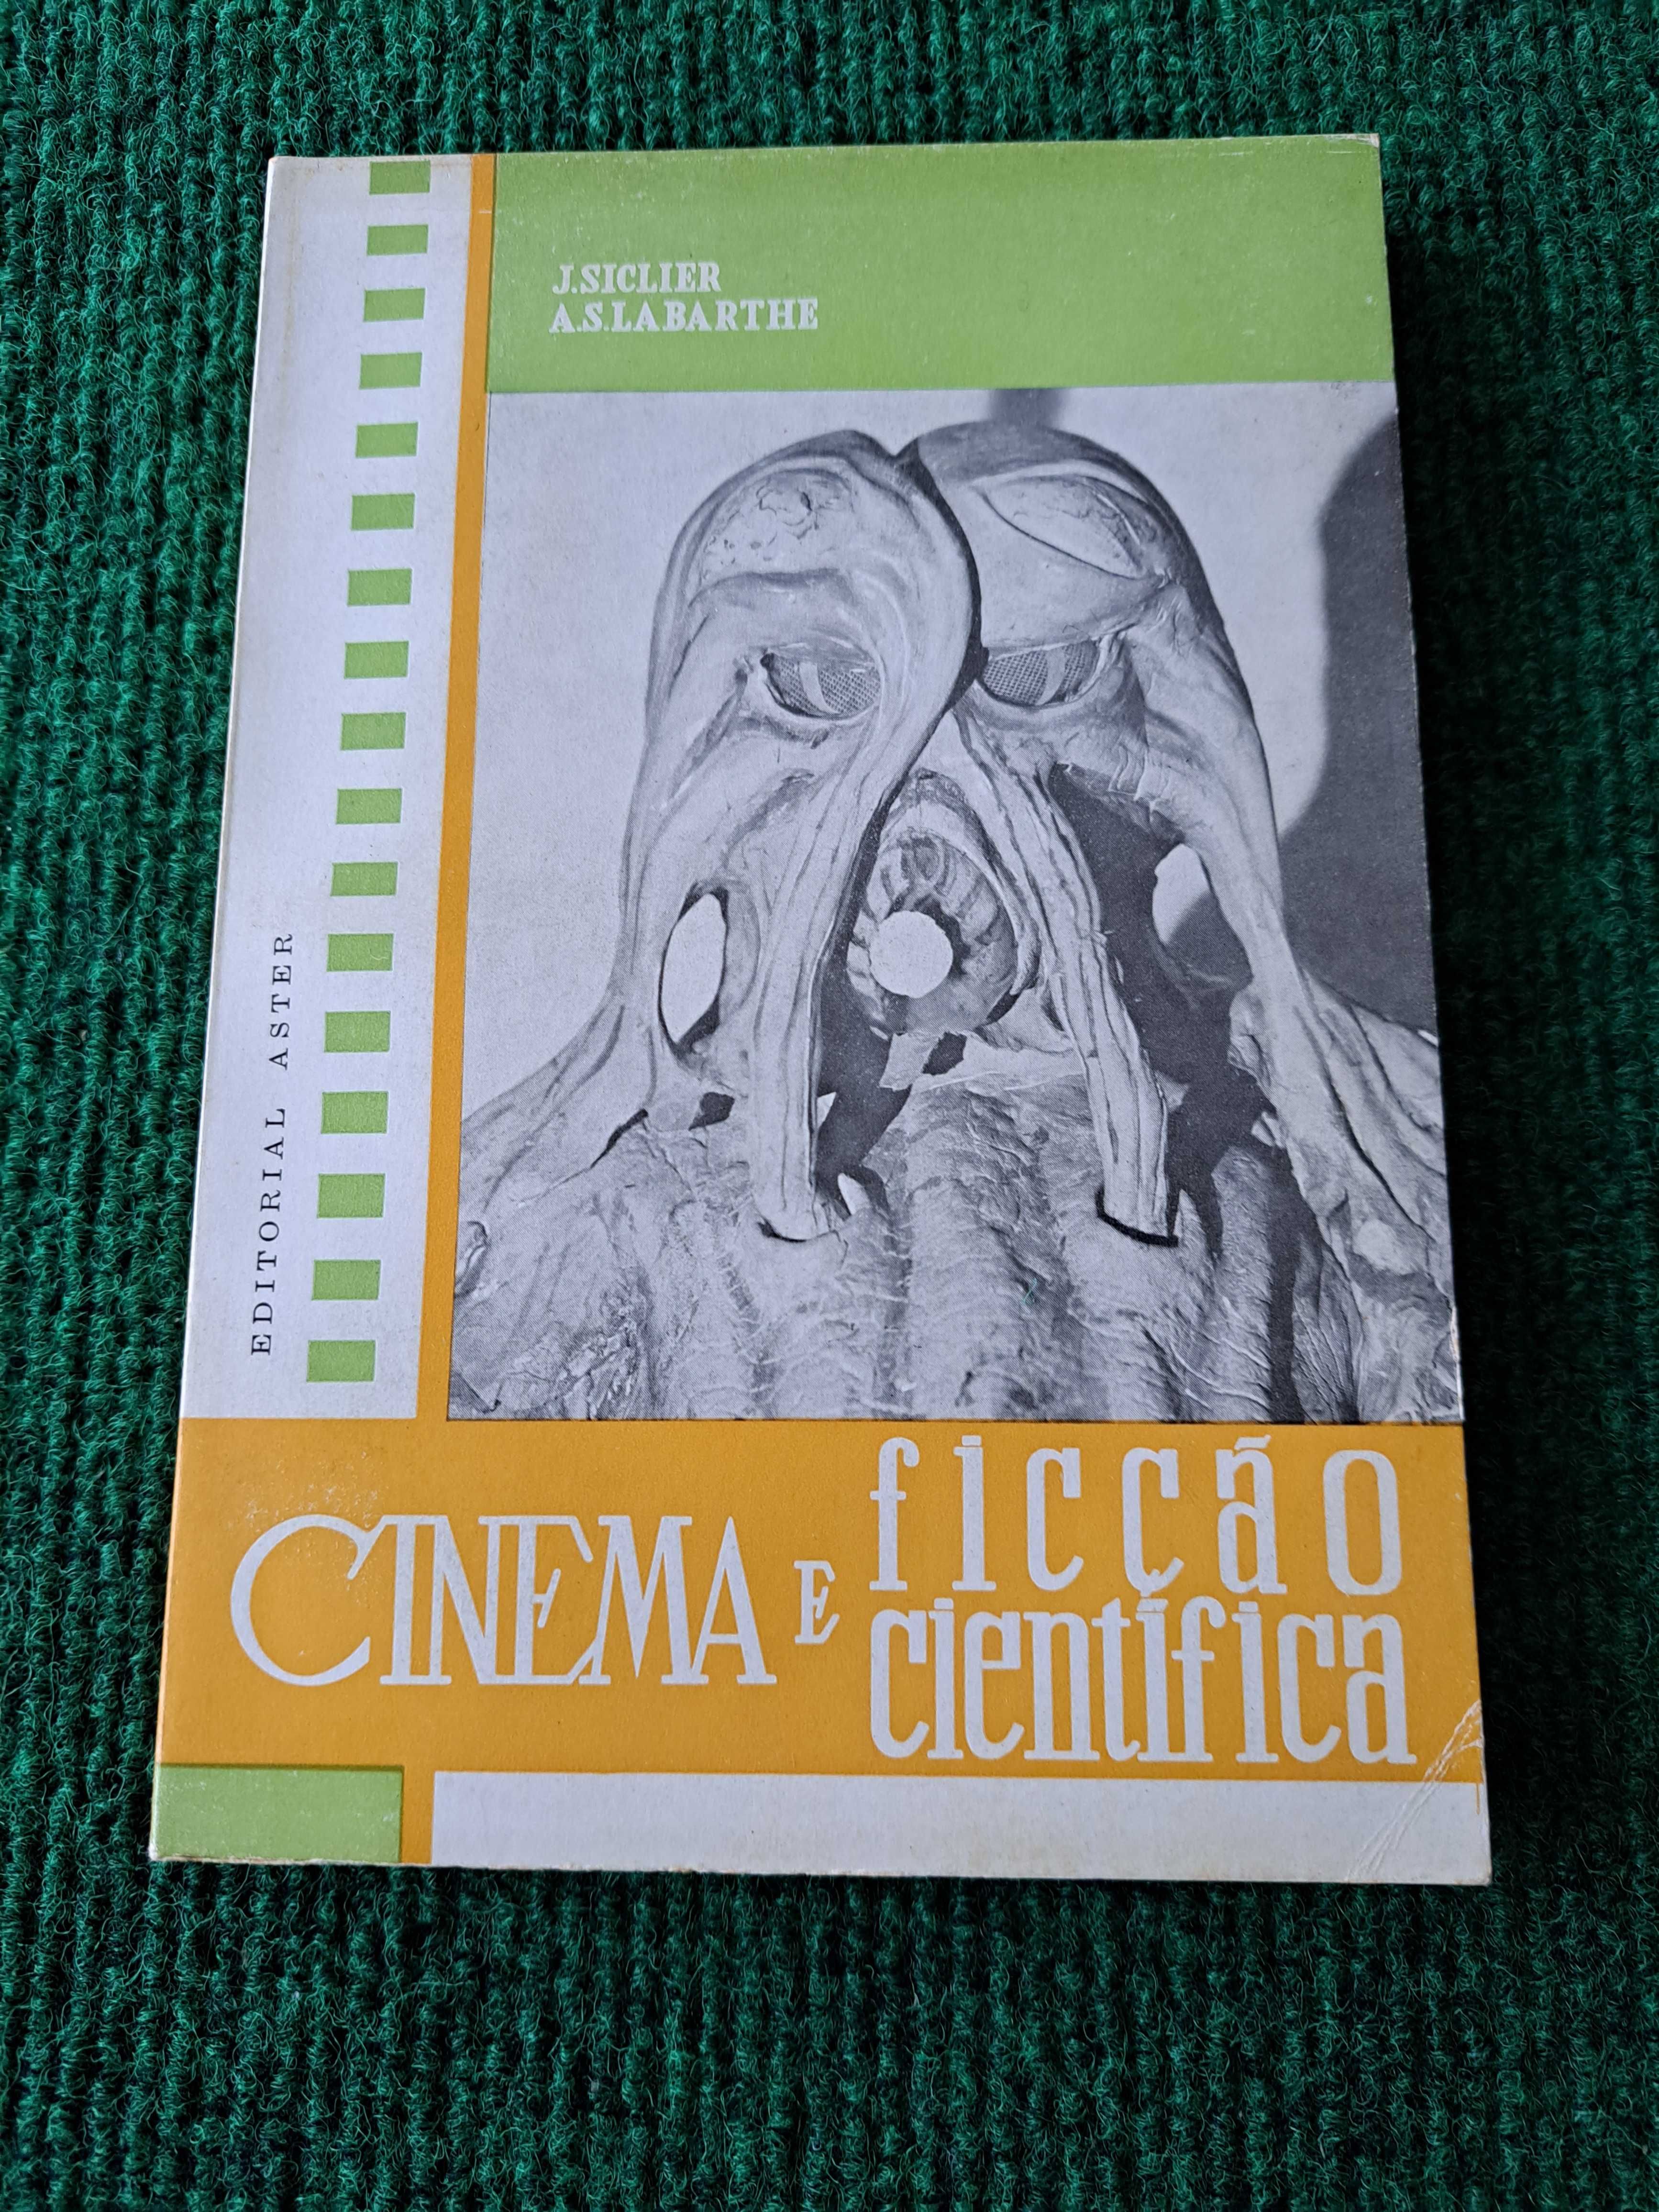 Cinema e Ficção Científica - J. Siclier / A.S. Labarthe